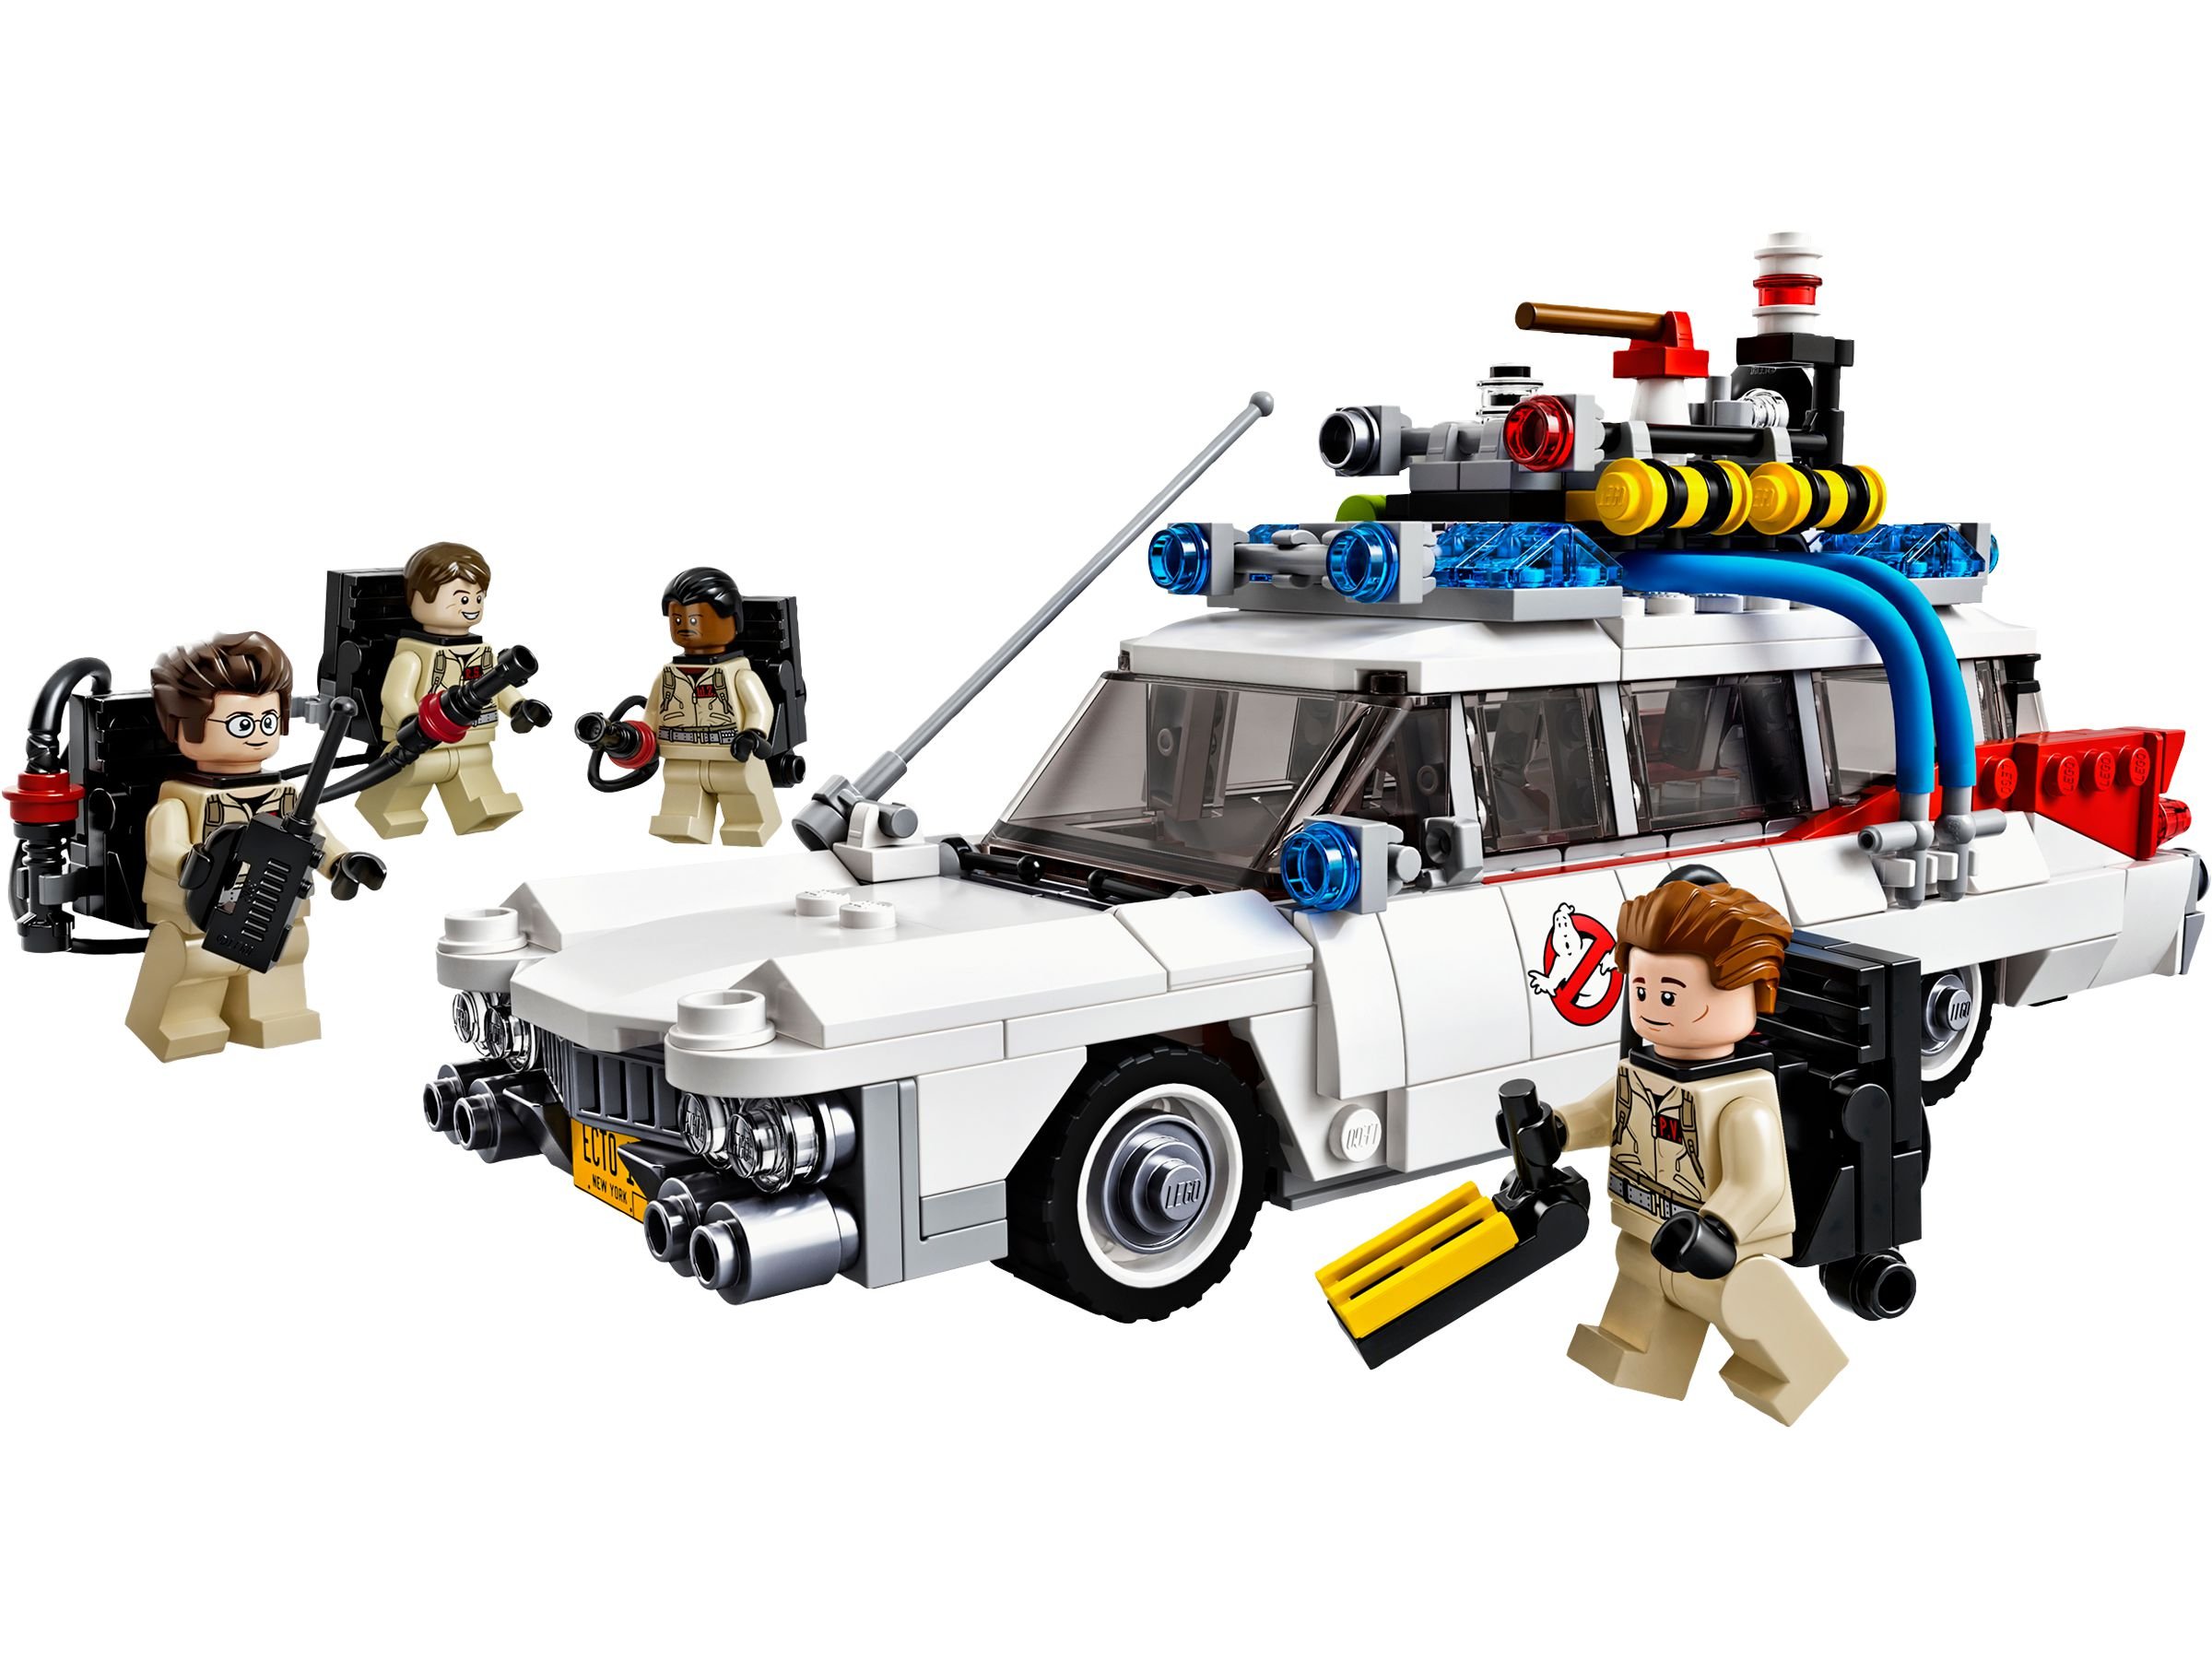 LEGO Ideas 21108 Ghostbusters™ Ecto-1 LEGO_21108.jpg